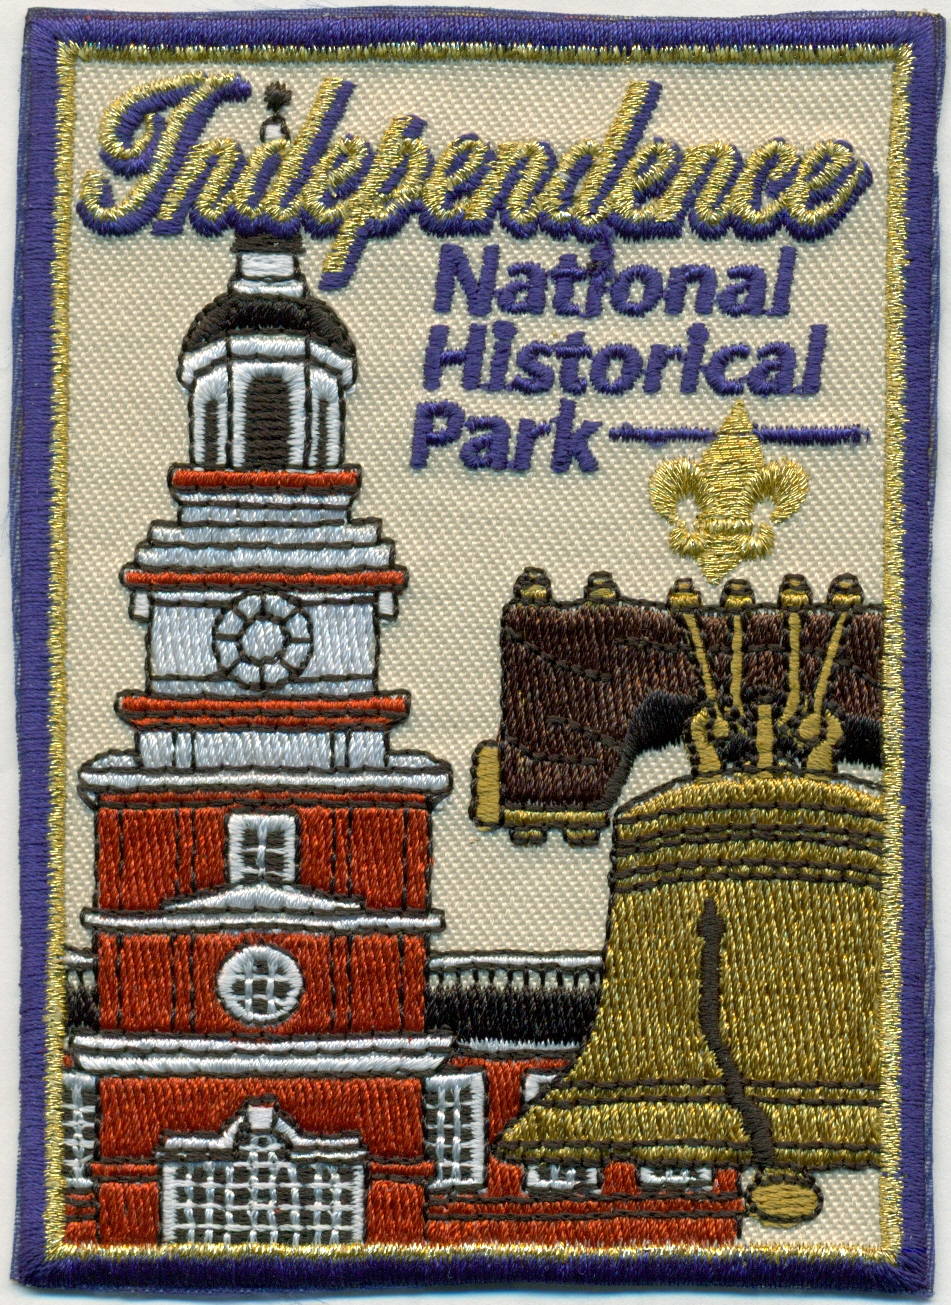 Independence National Historic Park emblem image